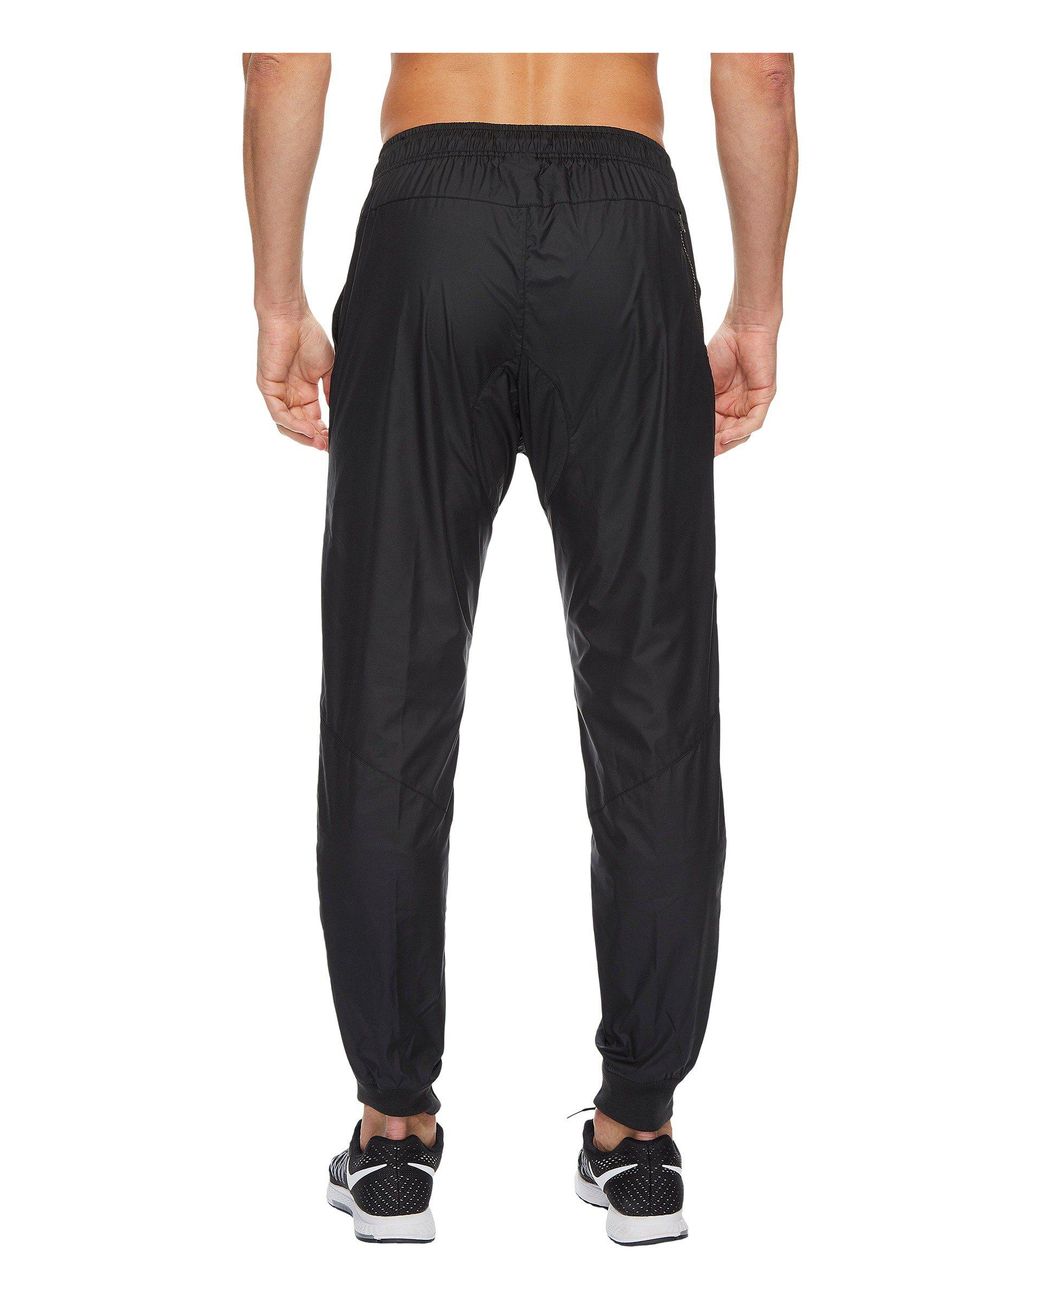 Nike Synthetic Sportswear Windrunner Pant in Black/Black/Black/White  (Black) for Men | Lyst